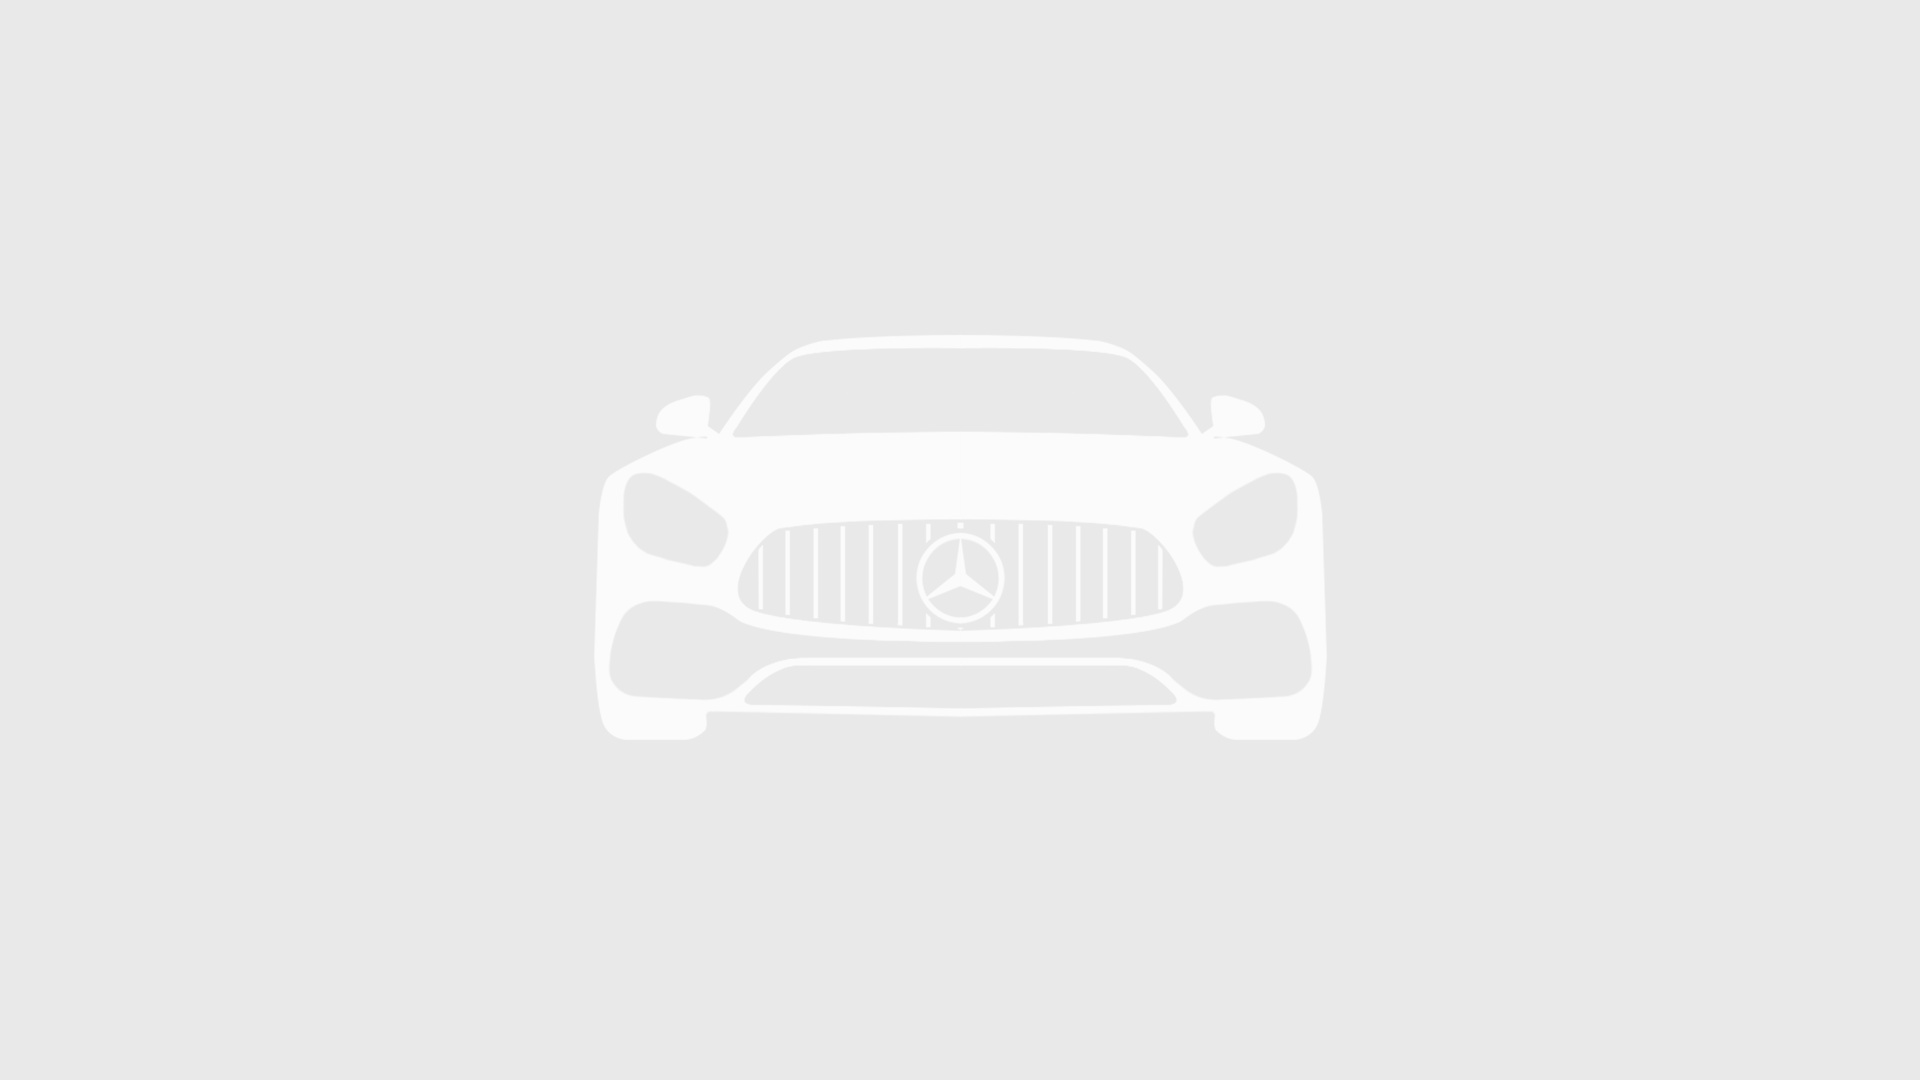 Mercedes-Benz комплектация Avantgarde / E 300 d двигатель 2 литра (237 л.с.) Черный